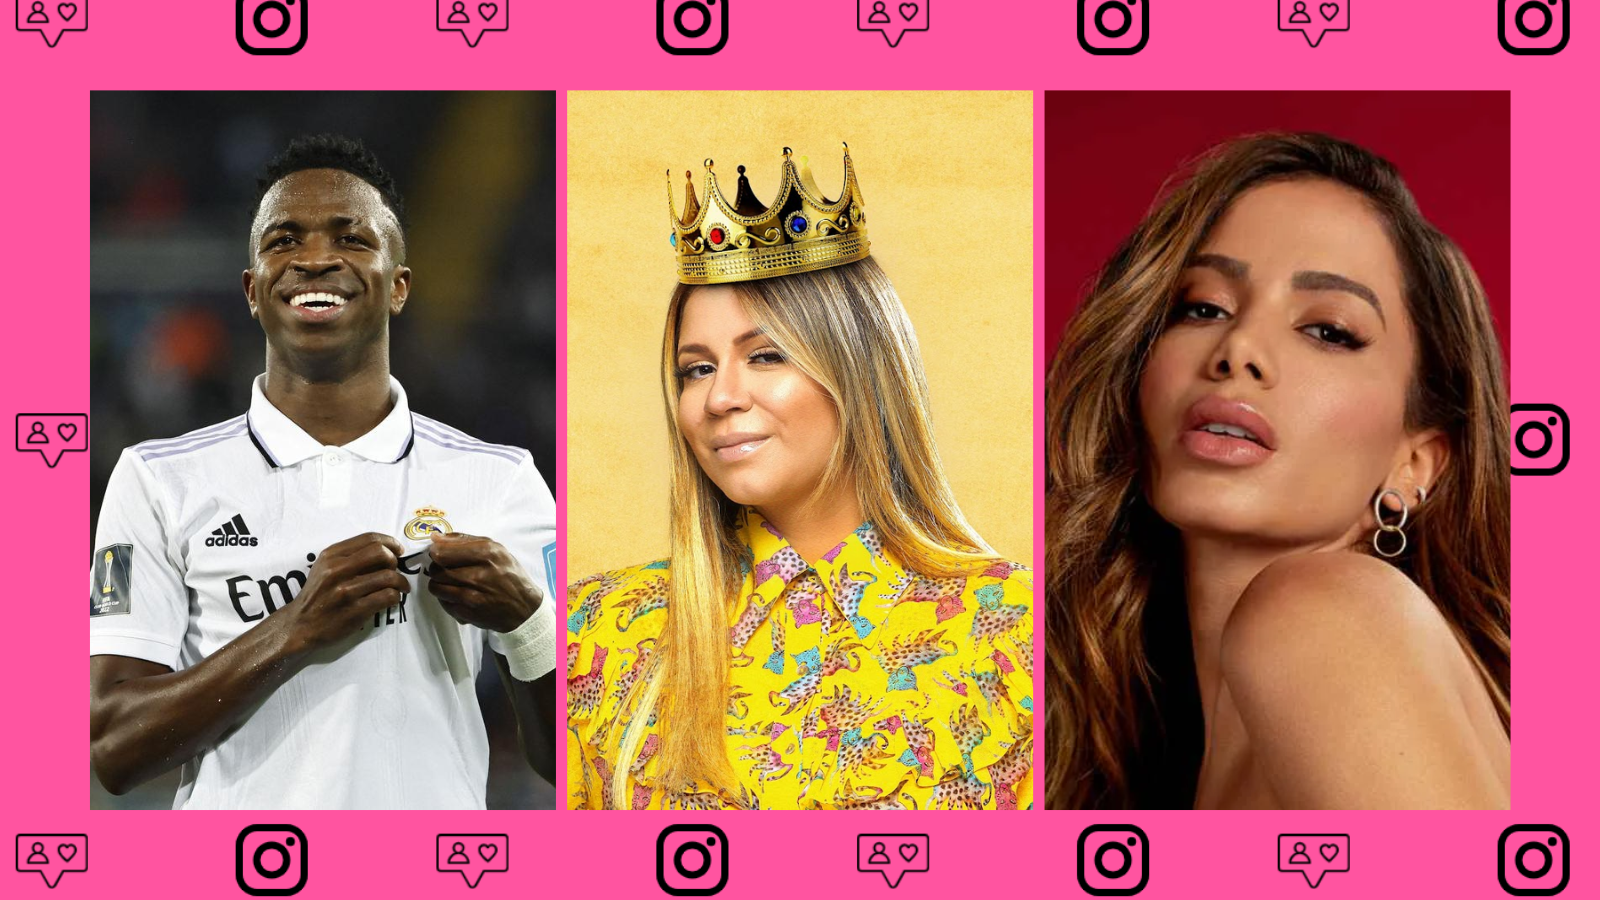 Os 20 perfis brasileiros mais seguidos do instagram. A maioria das celebridades são artistas em geral, jogadores de futebol e comediantes. Será que você segue algum deles no instagram? Vem descobrir!